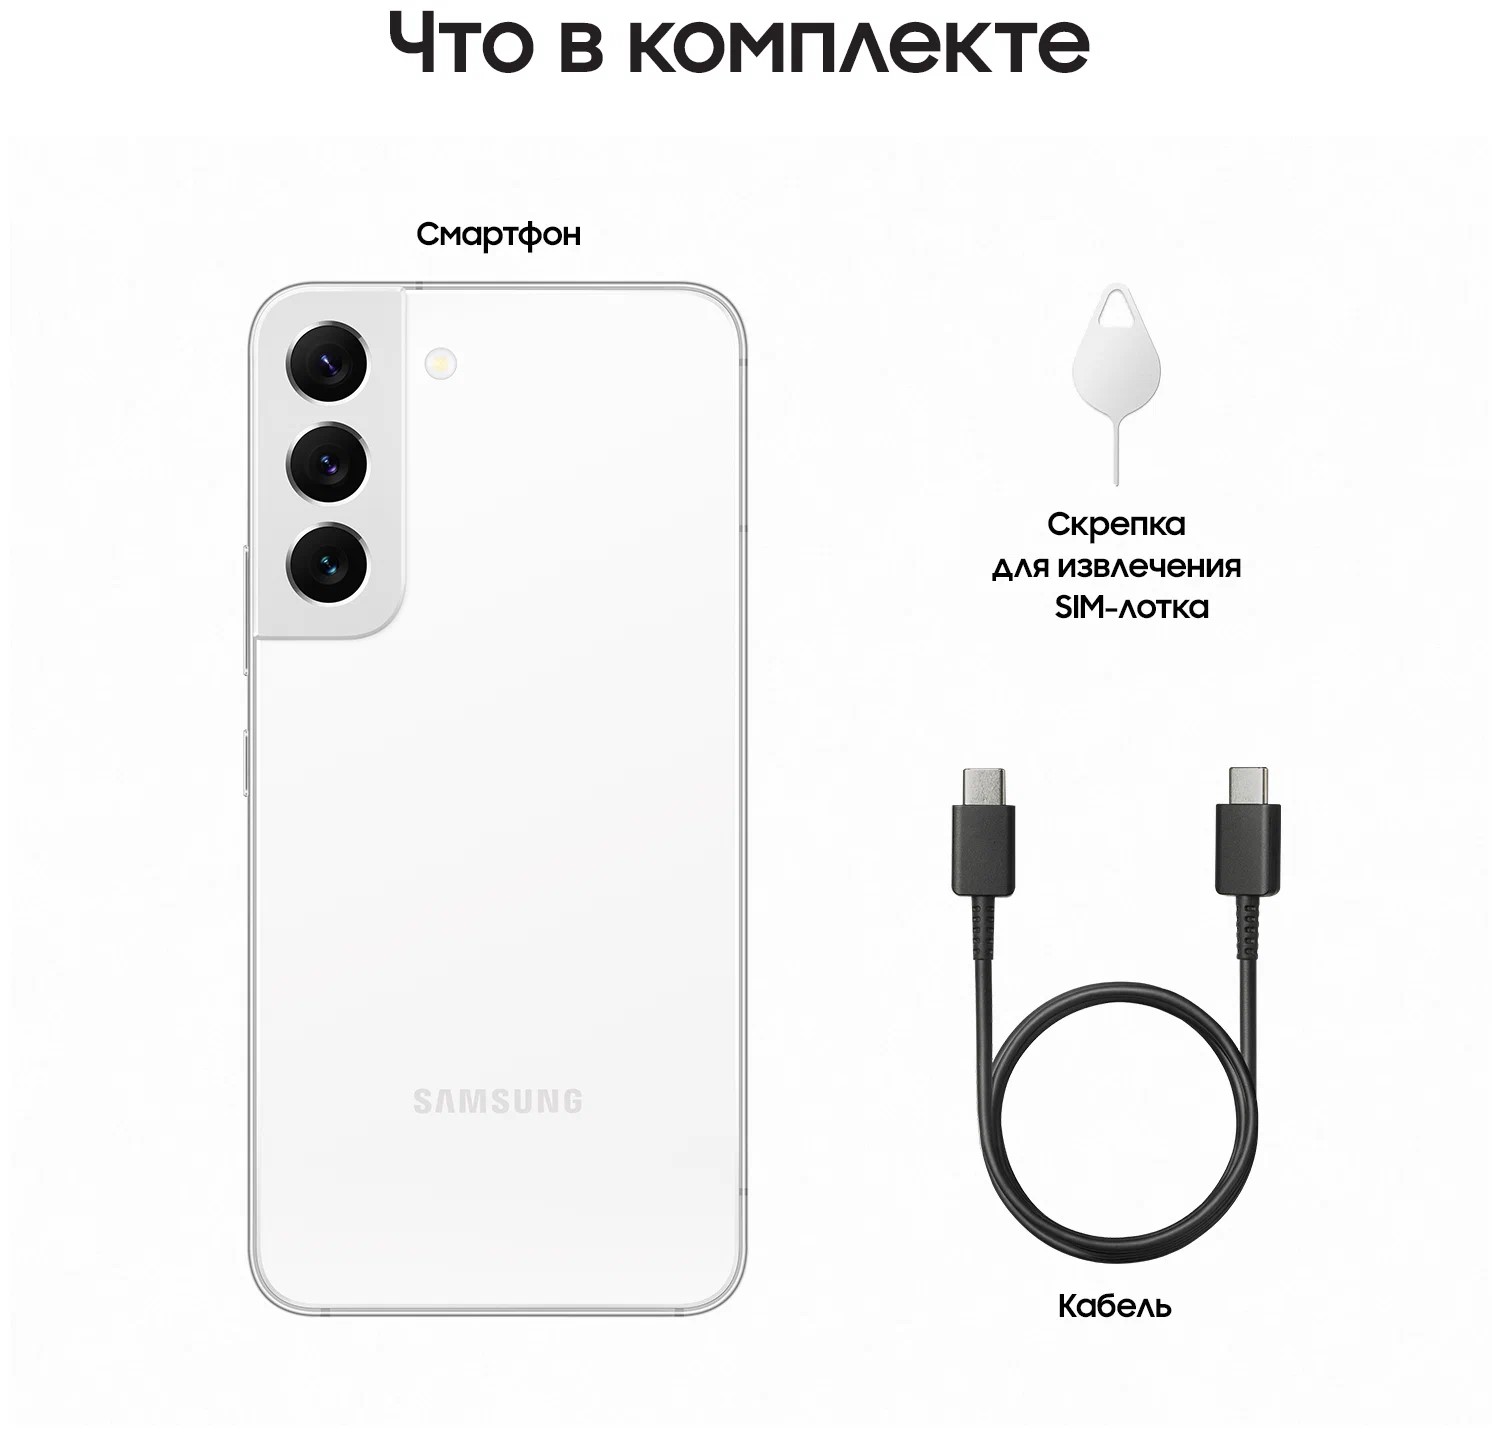 Смартфон Samsung Galaxy S22 8/256GB Phantom White, купить в Москве ...